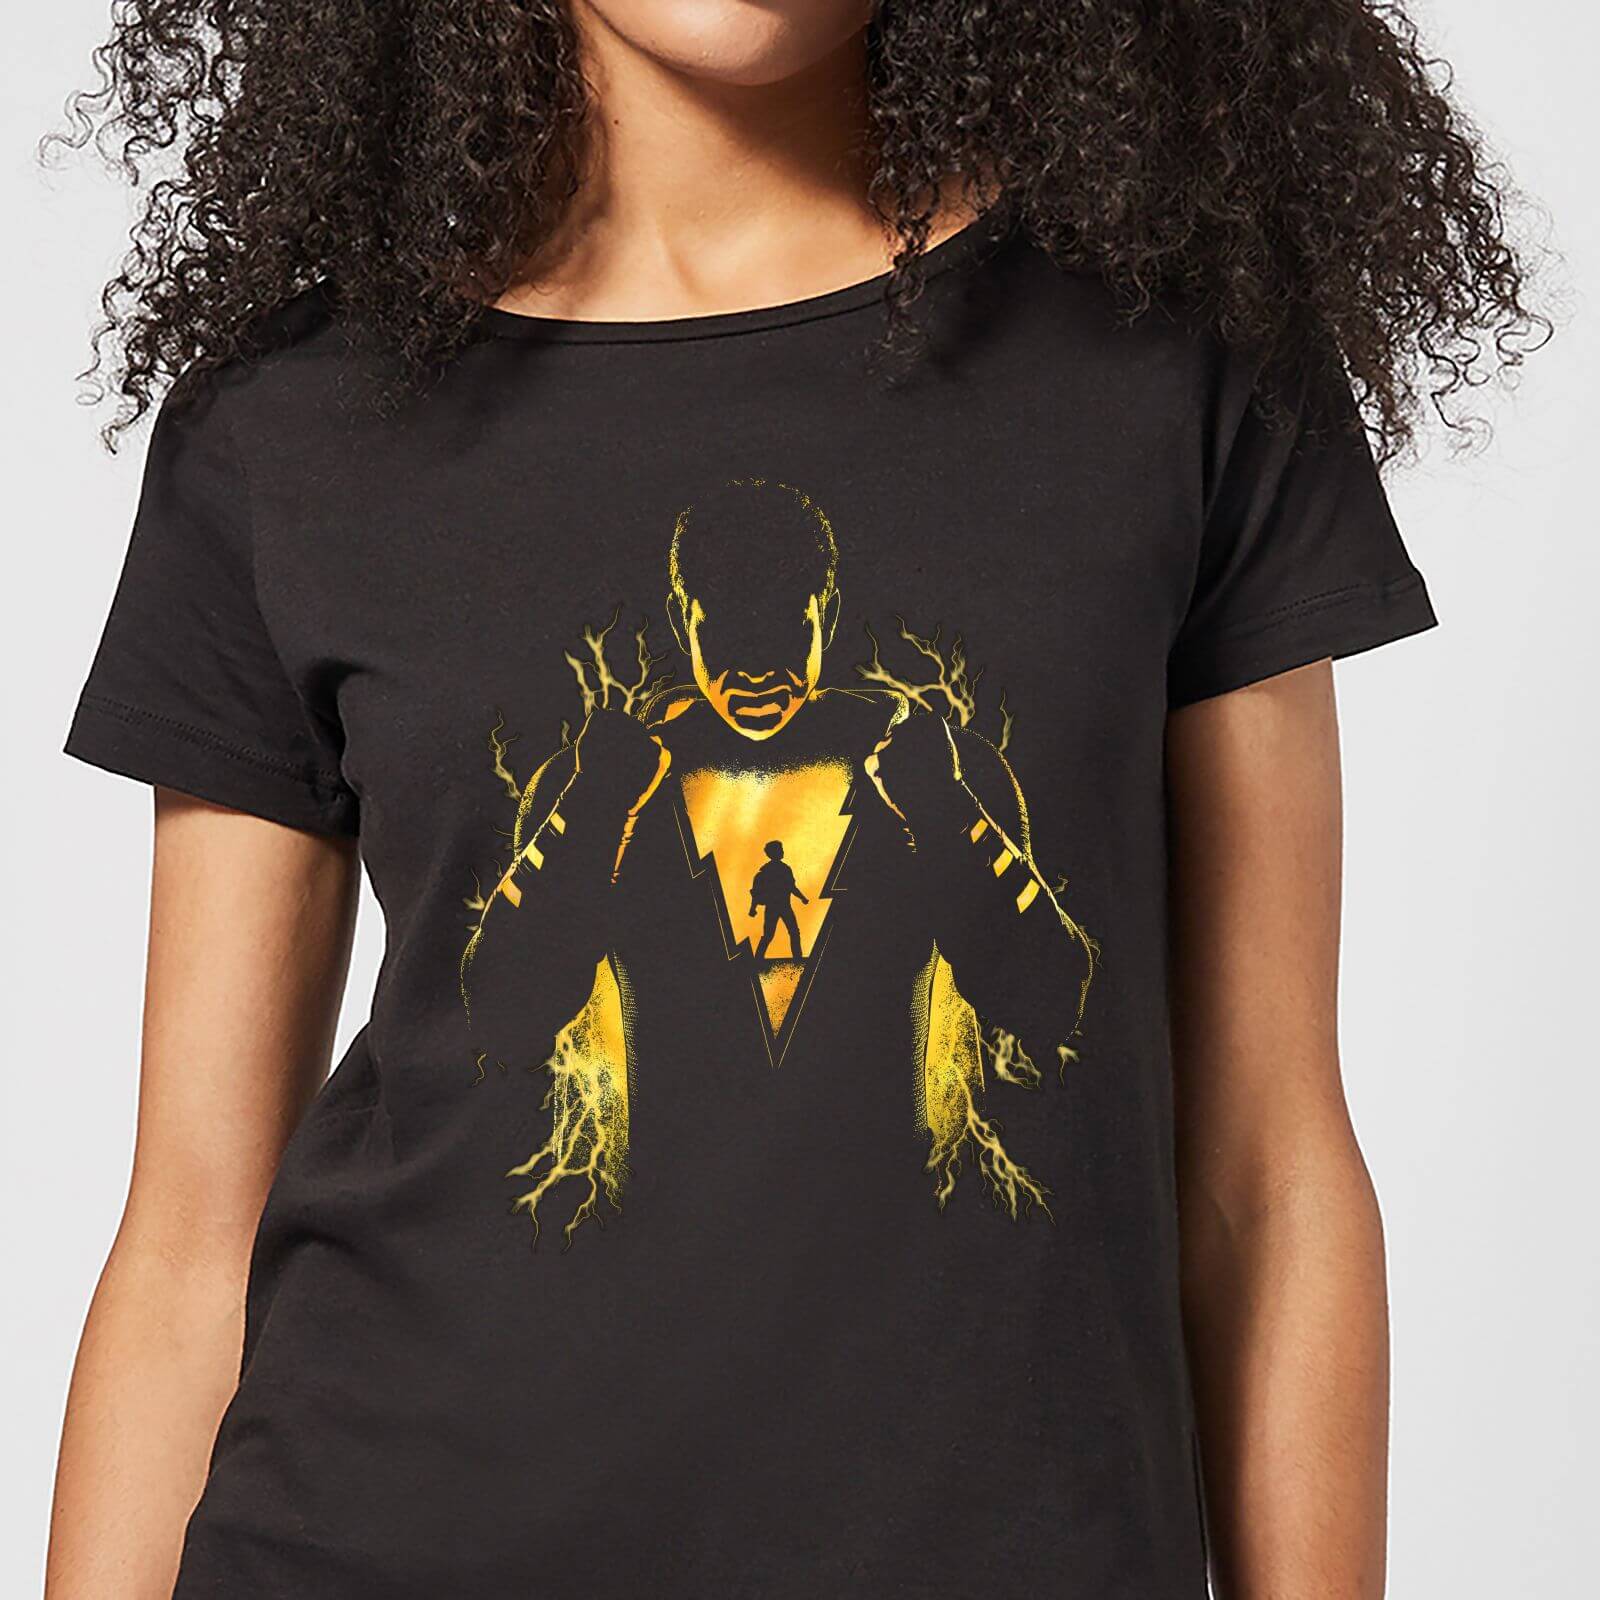 Shazam Lightning Silhouette Women's T-Shirt - Black - M - Black